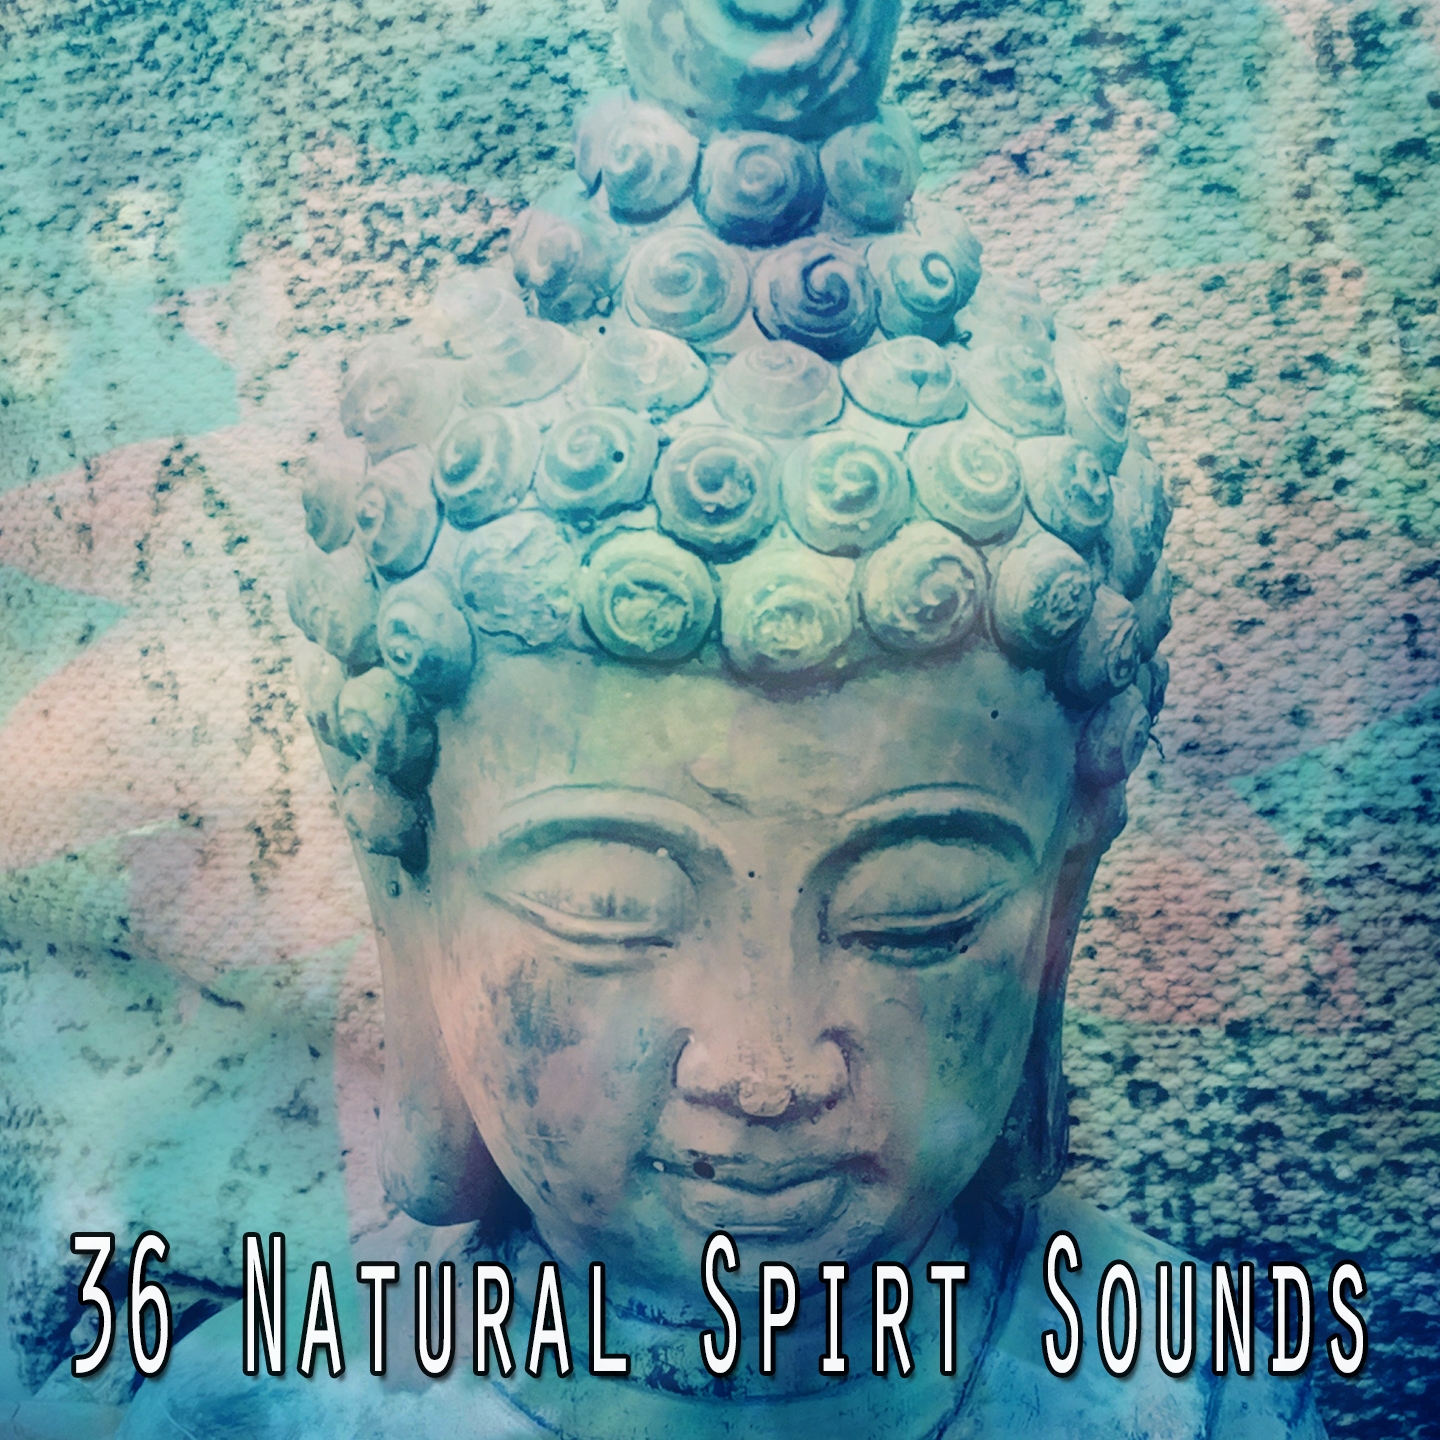 36 Natural Spirt Sounds